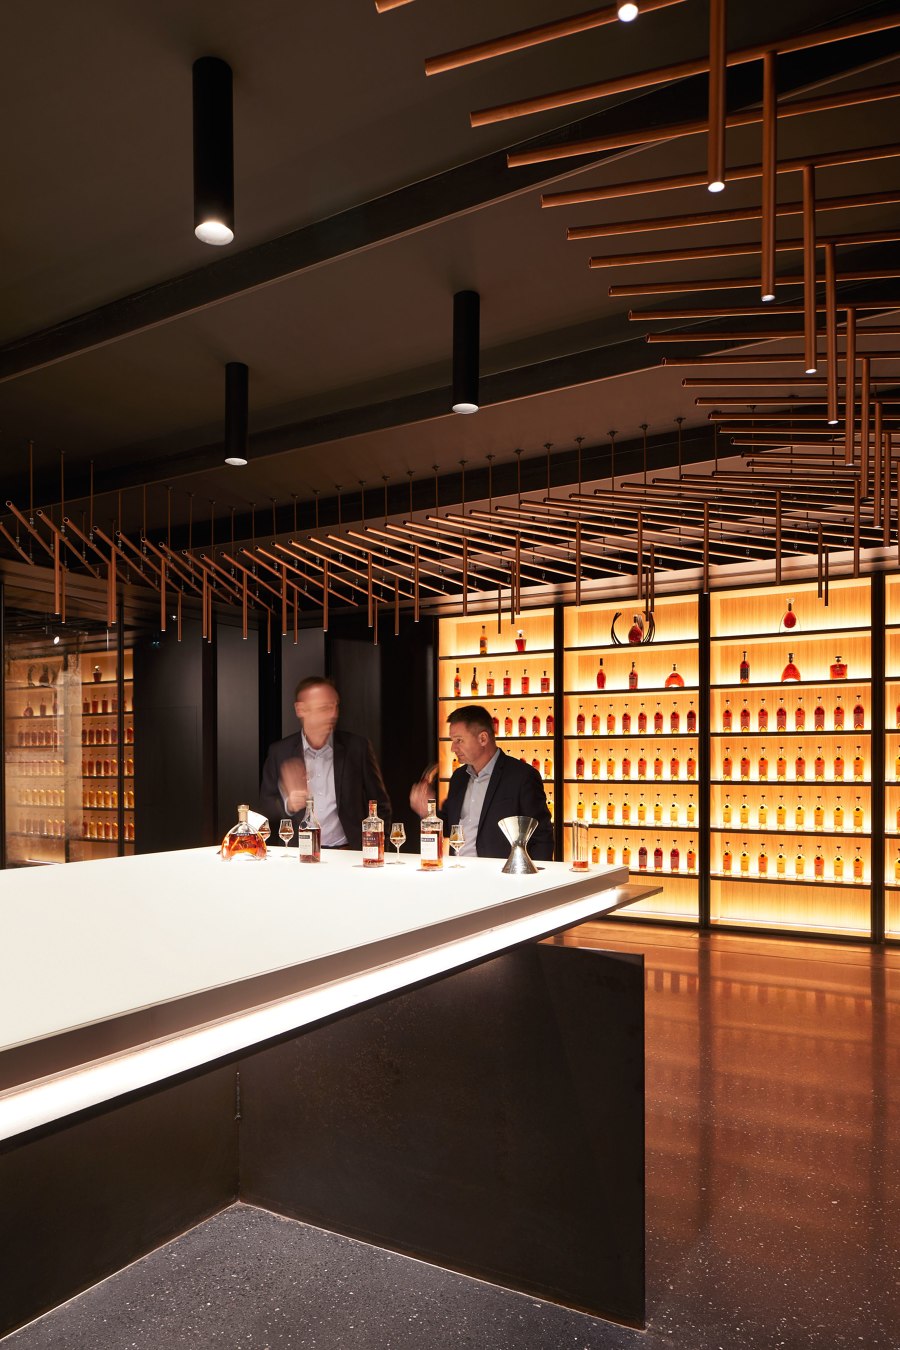 Tasting Room for Master Blenders de Elluin Duolé Gillon architecture | Diseño de clubs